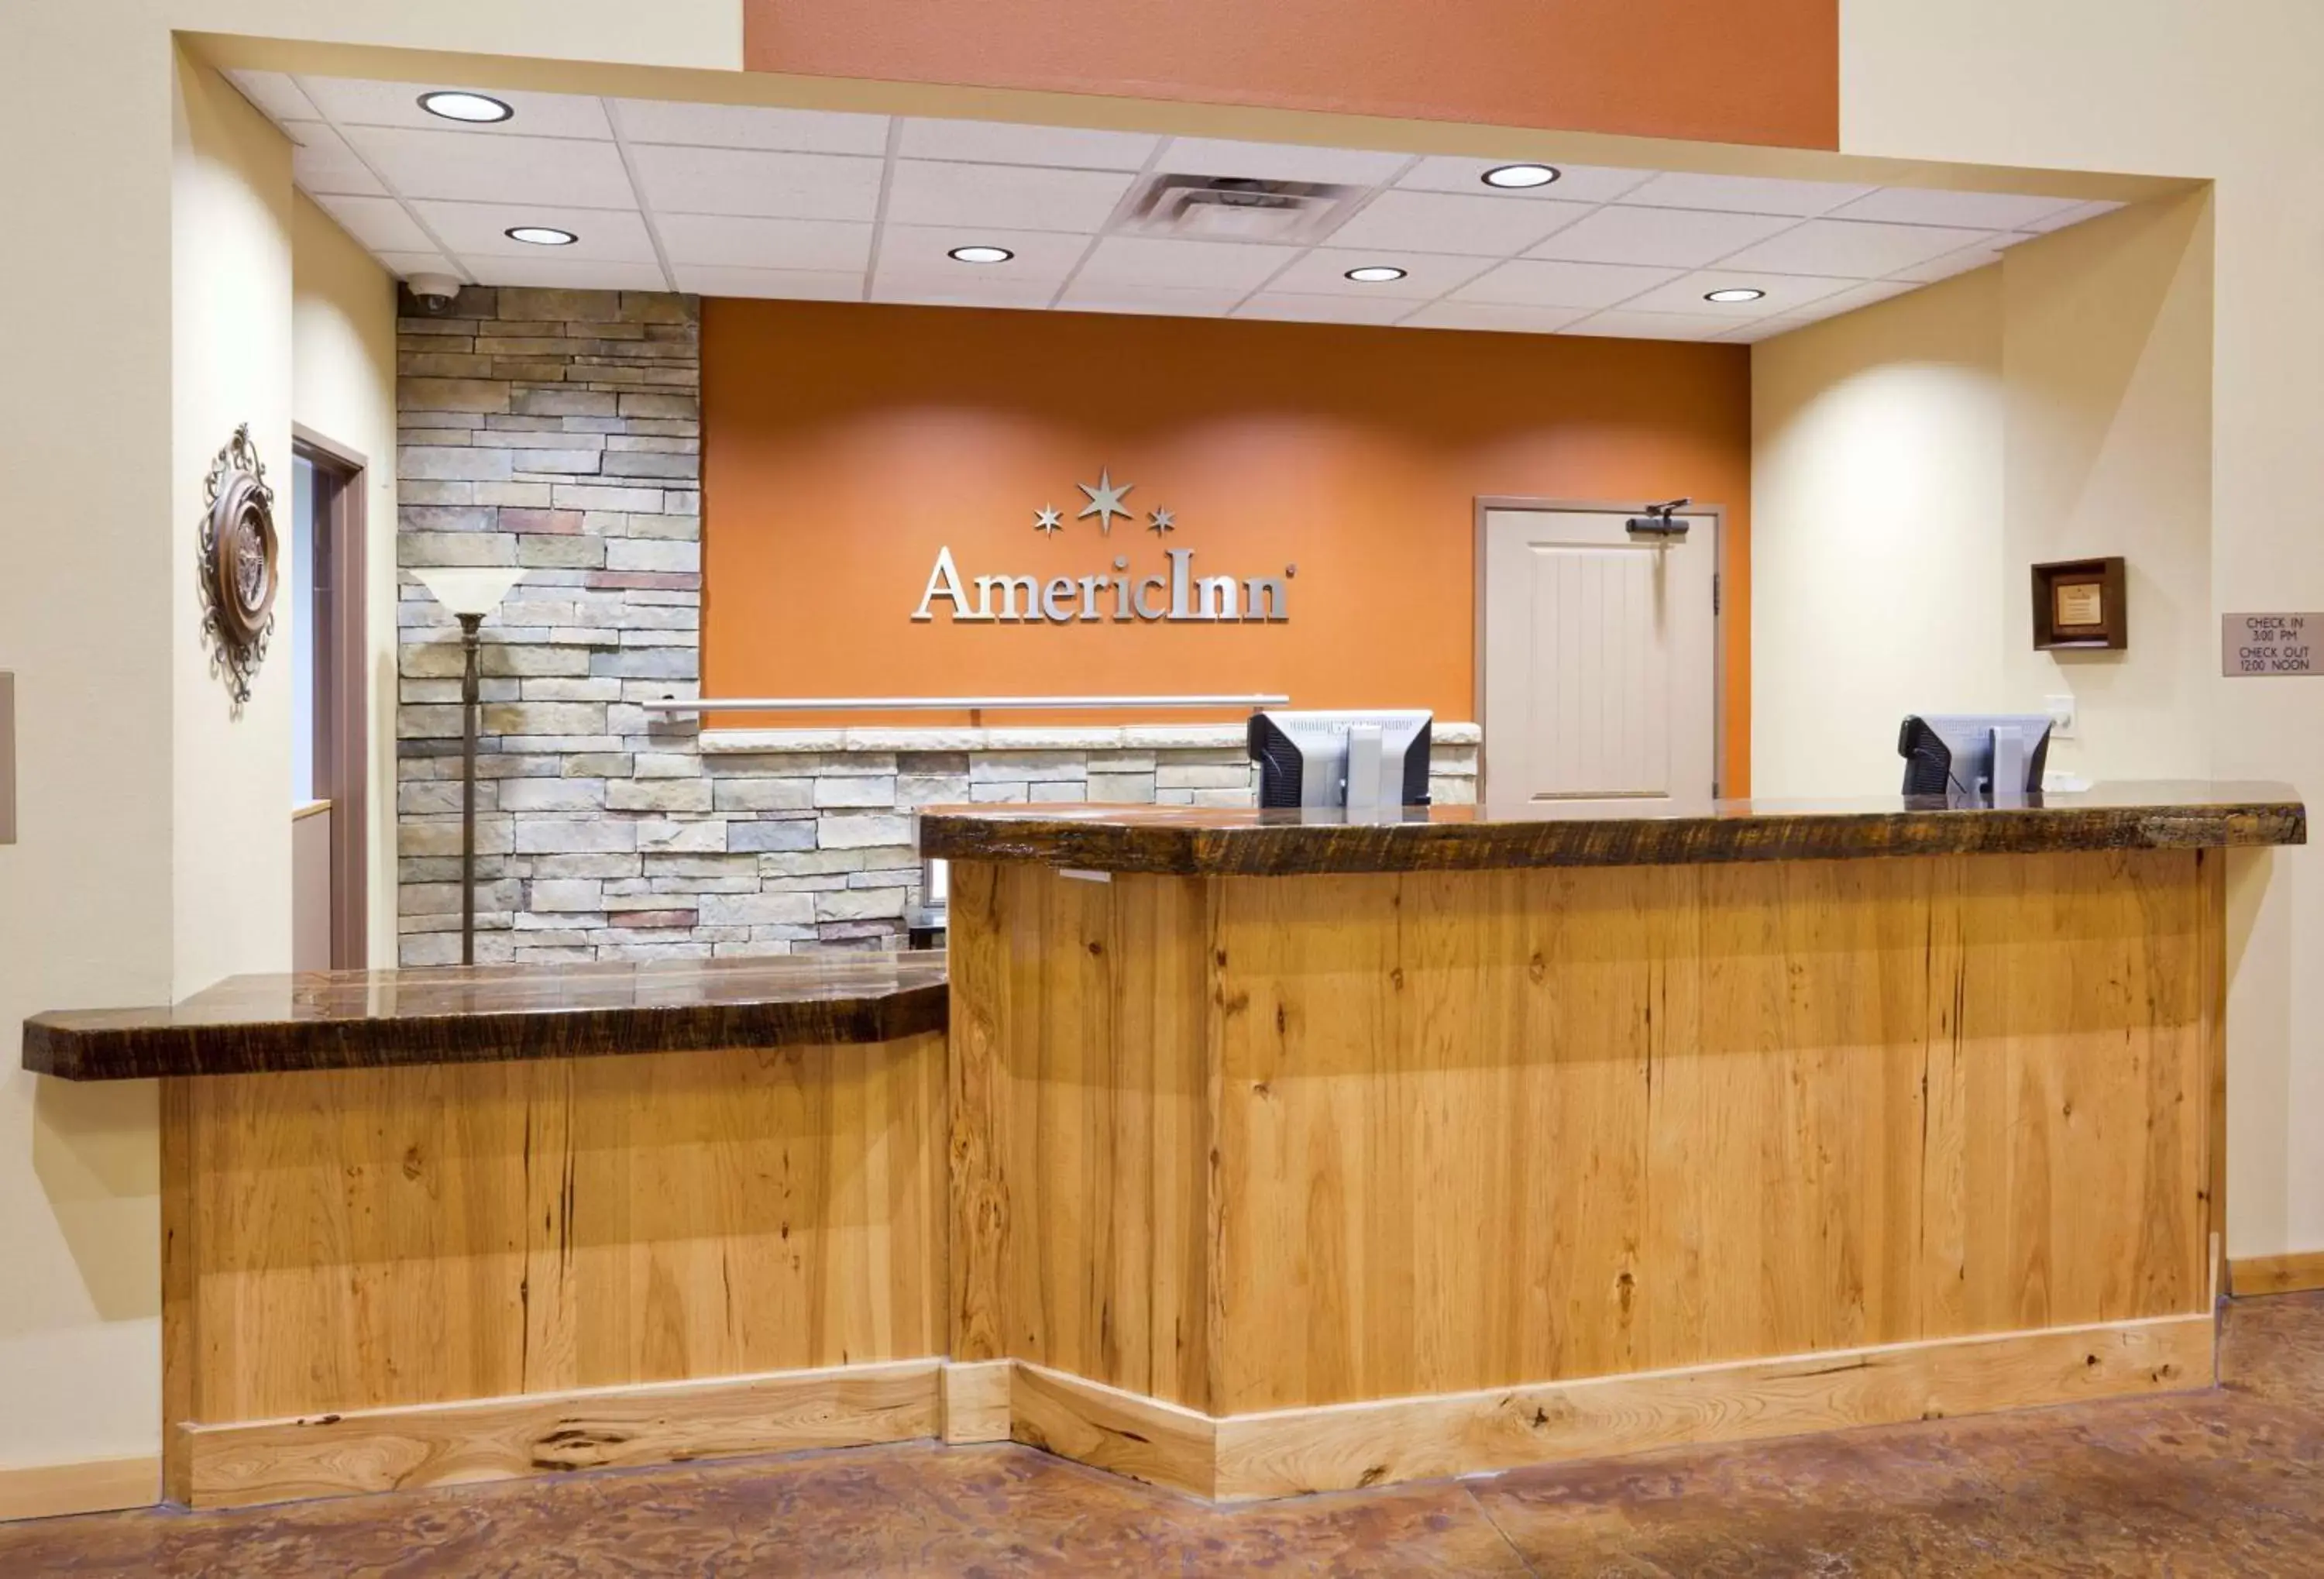 Lobby or reception, Lobby/Reception in AmericInn by Wyndham Fargo Medical Center